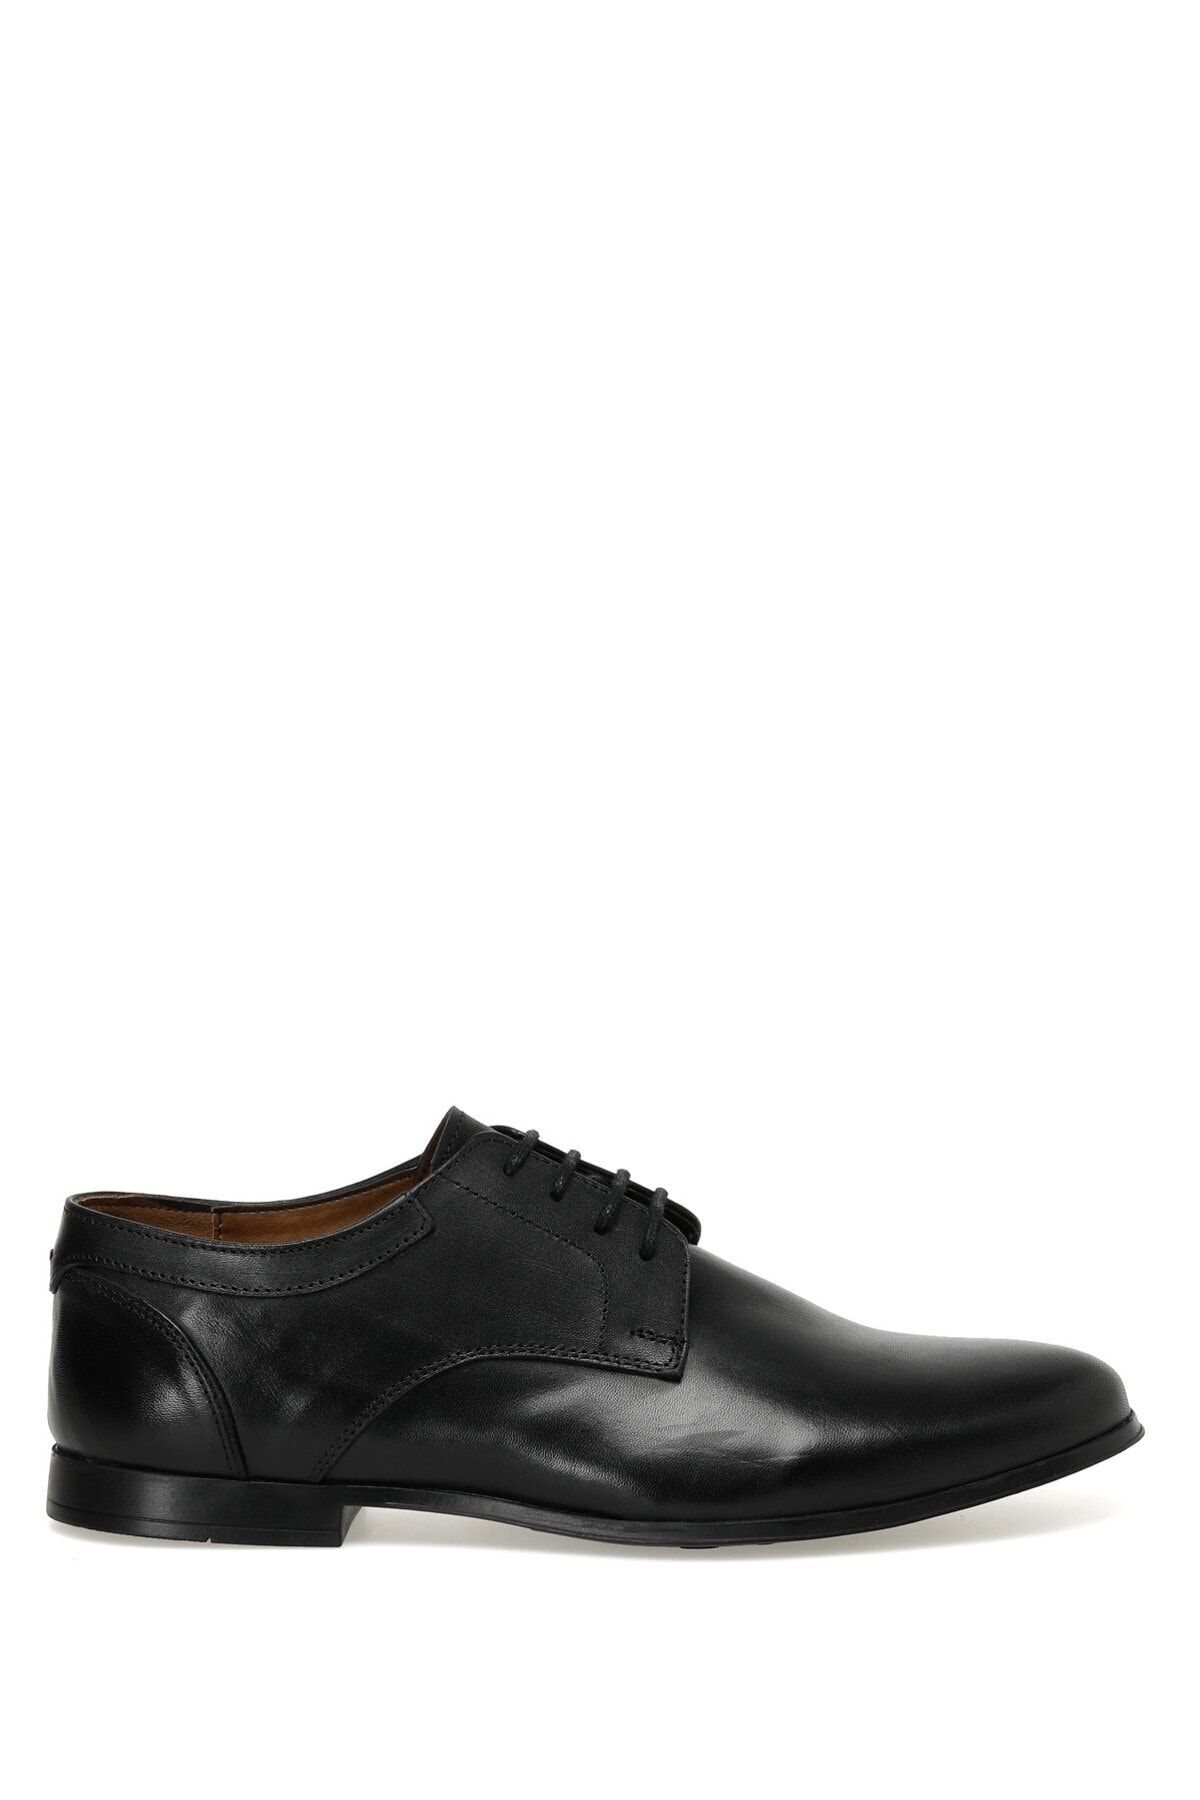 Garamond Simsek 3fx Siyah Erkek Klasik Ayakkabı